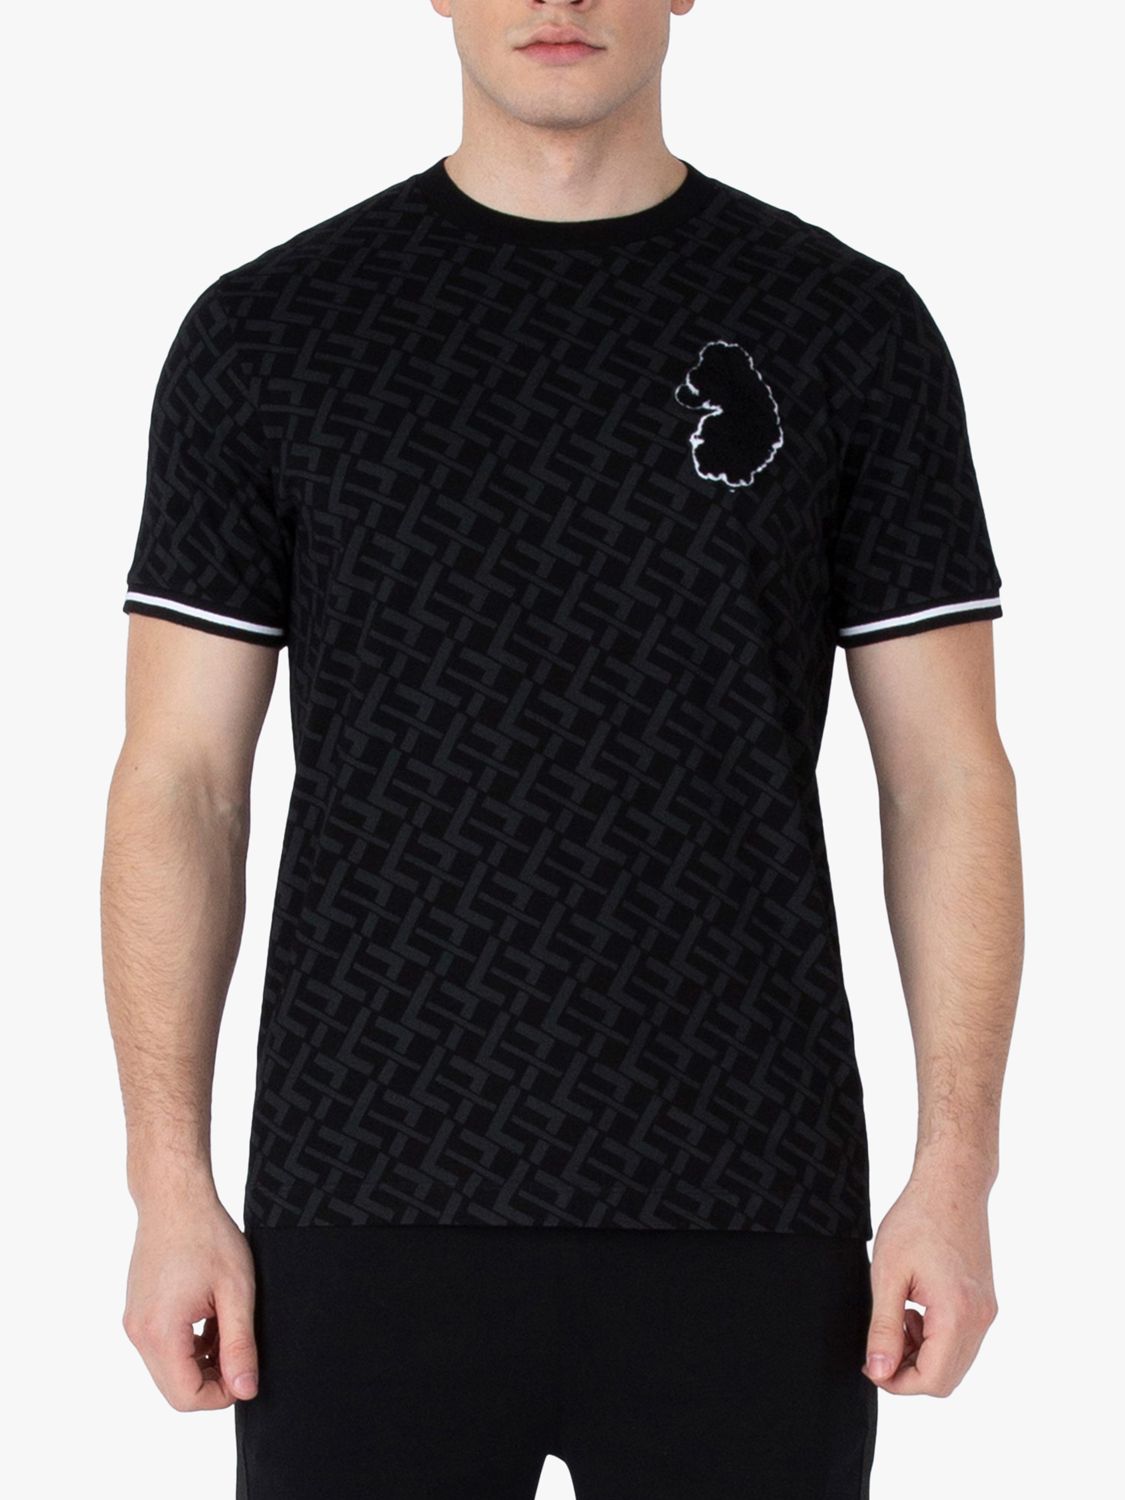 LUKE 1977 Varsity Inspired T-Shirt, Black, XL